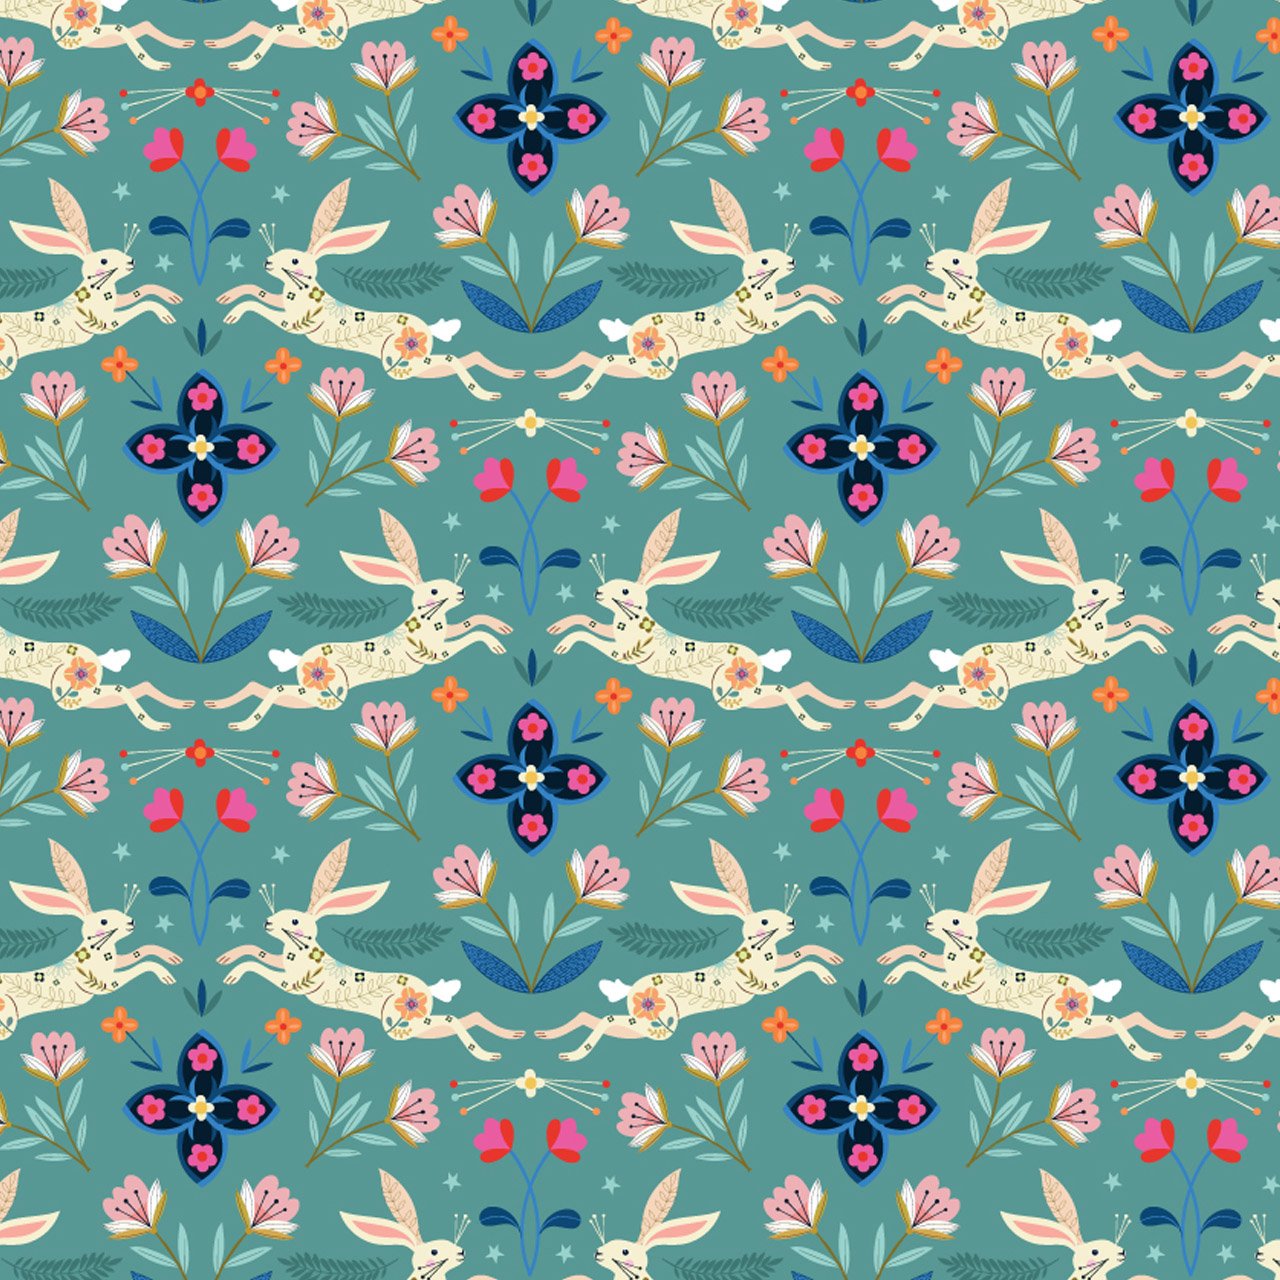 Dashwood Studio Fabric - Animal Magic - Rabbit - Cotton Fabric